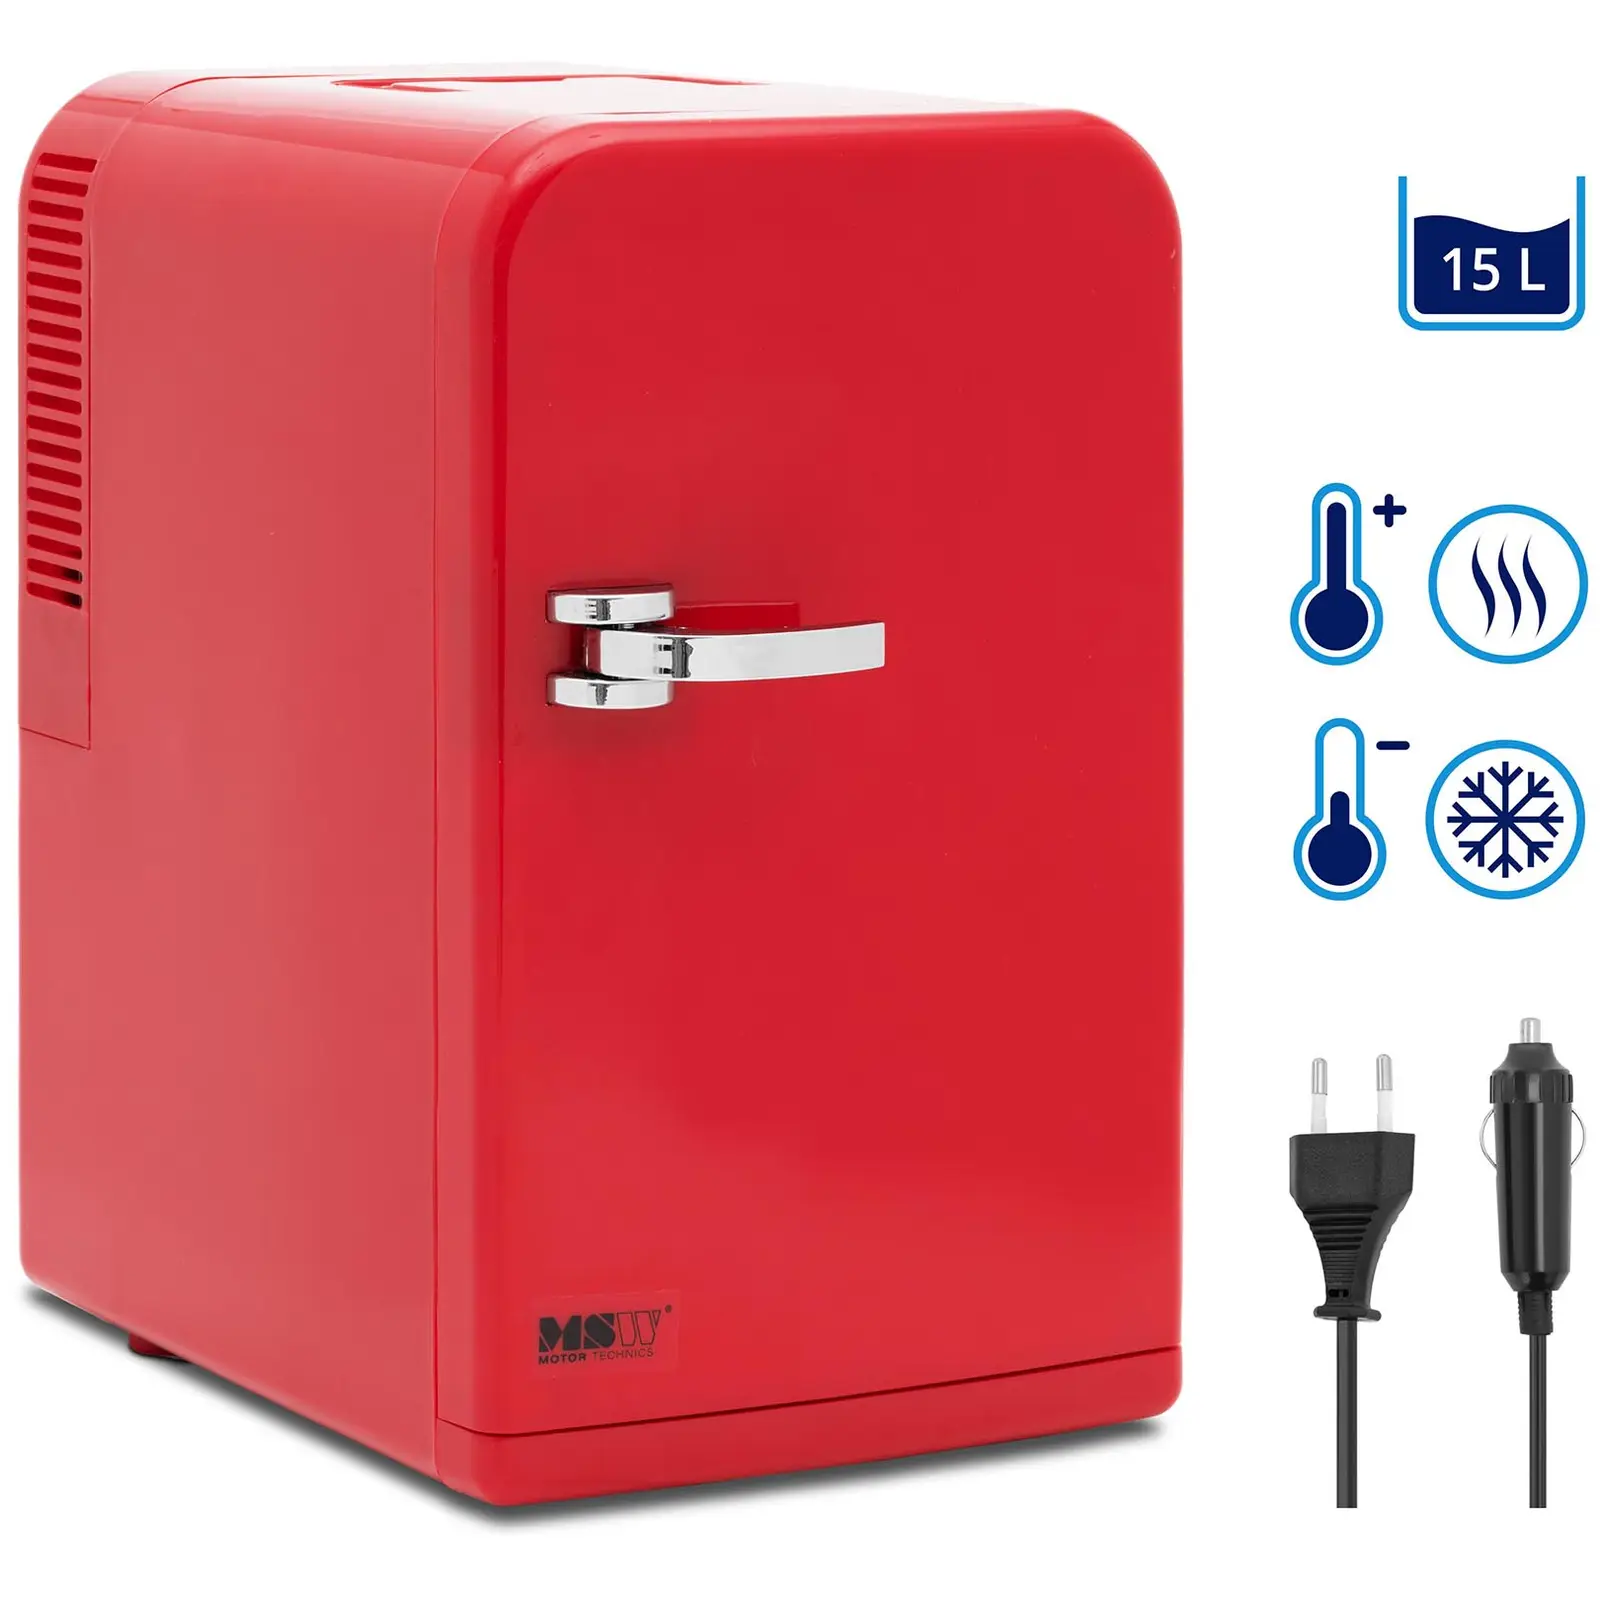 Mini refrigerador 12 V / 230 V - aparato 2 en 1 con función de mantenimiento de calor - 15 L - rojo